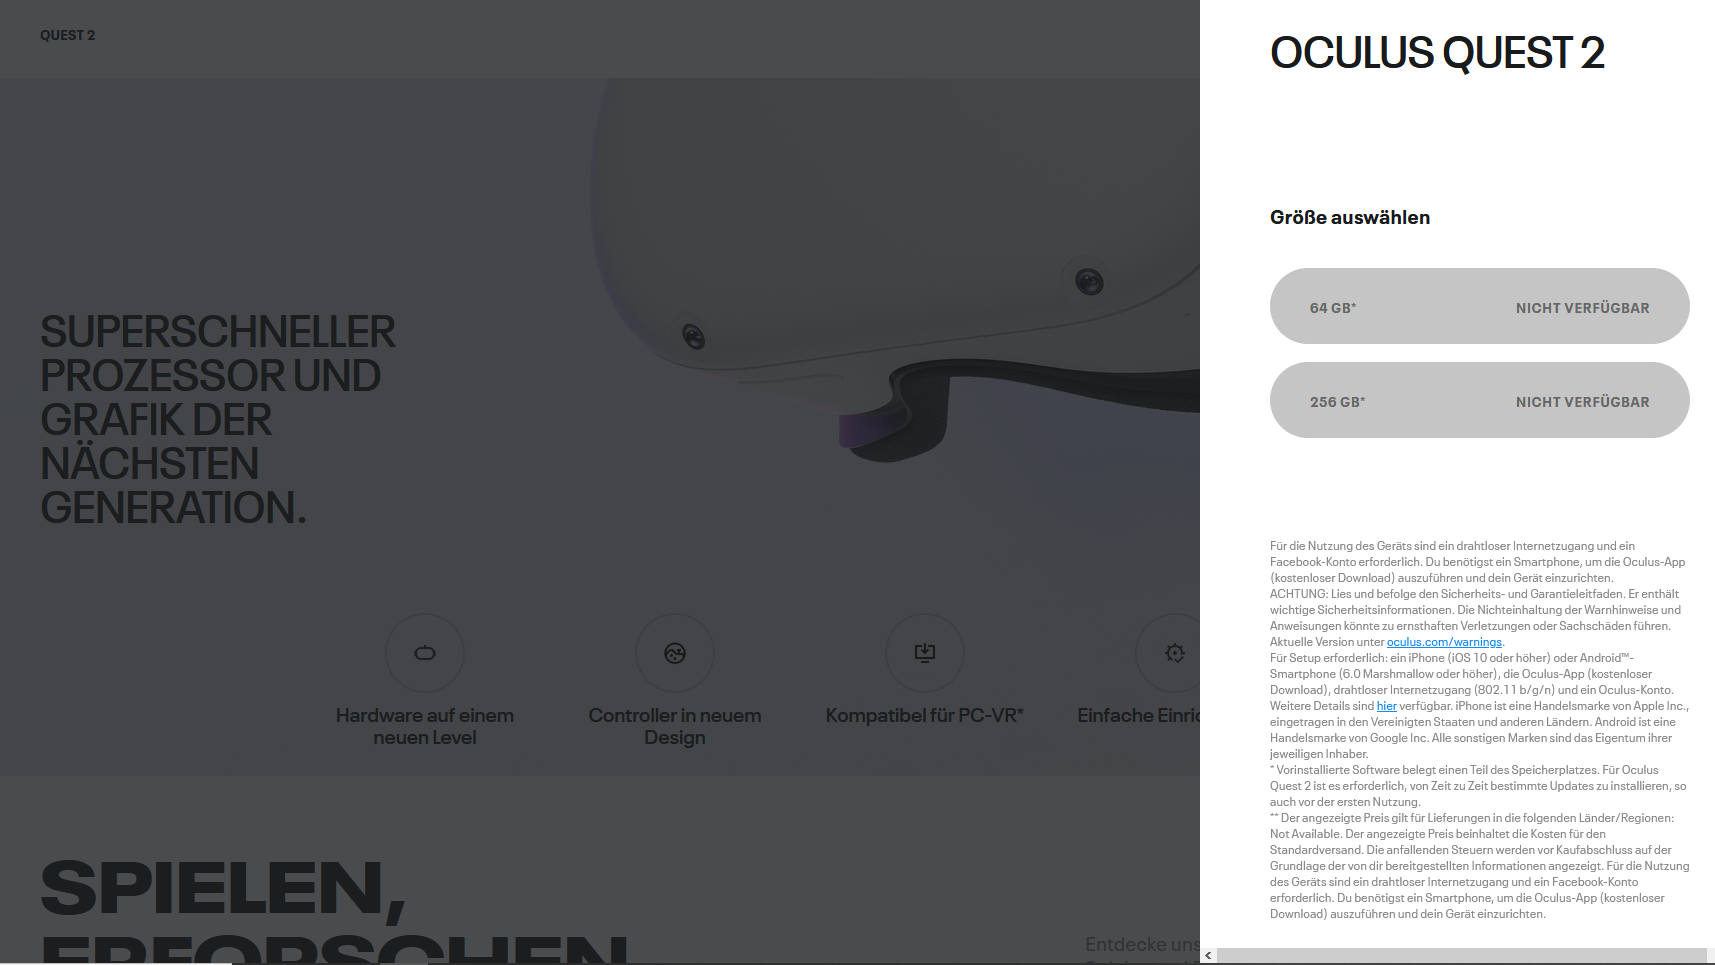 Auflösung hoch, Preis runter: Oculus Quest 2 für 350 Euro | heise online